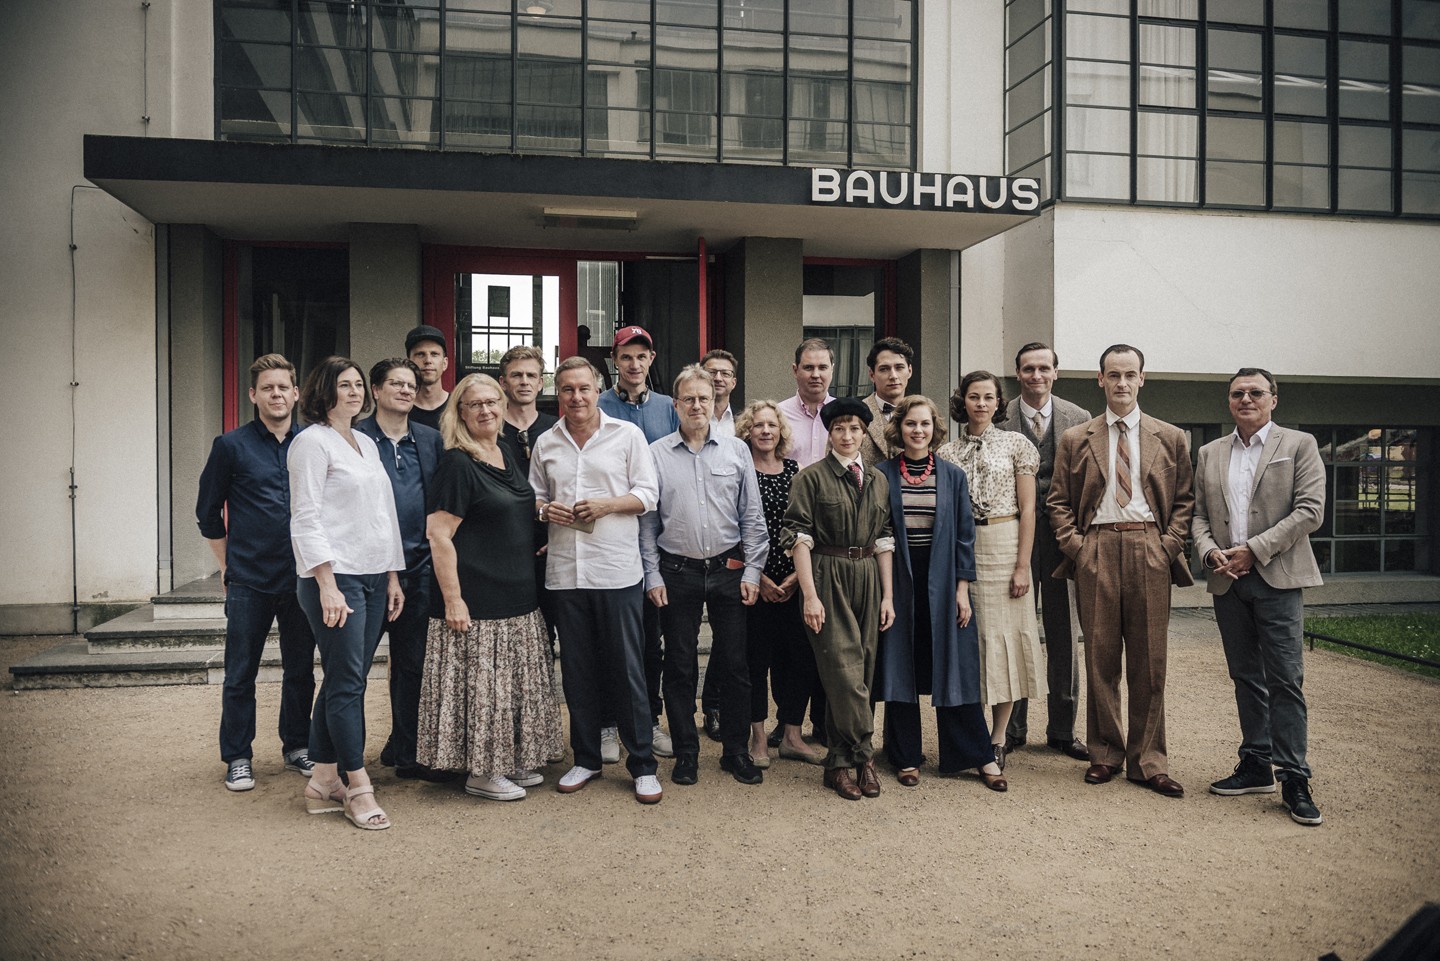 Cinema e arquitetura: filme conta a história das mulheres na Bauhaus (Foto: Divulgação)